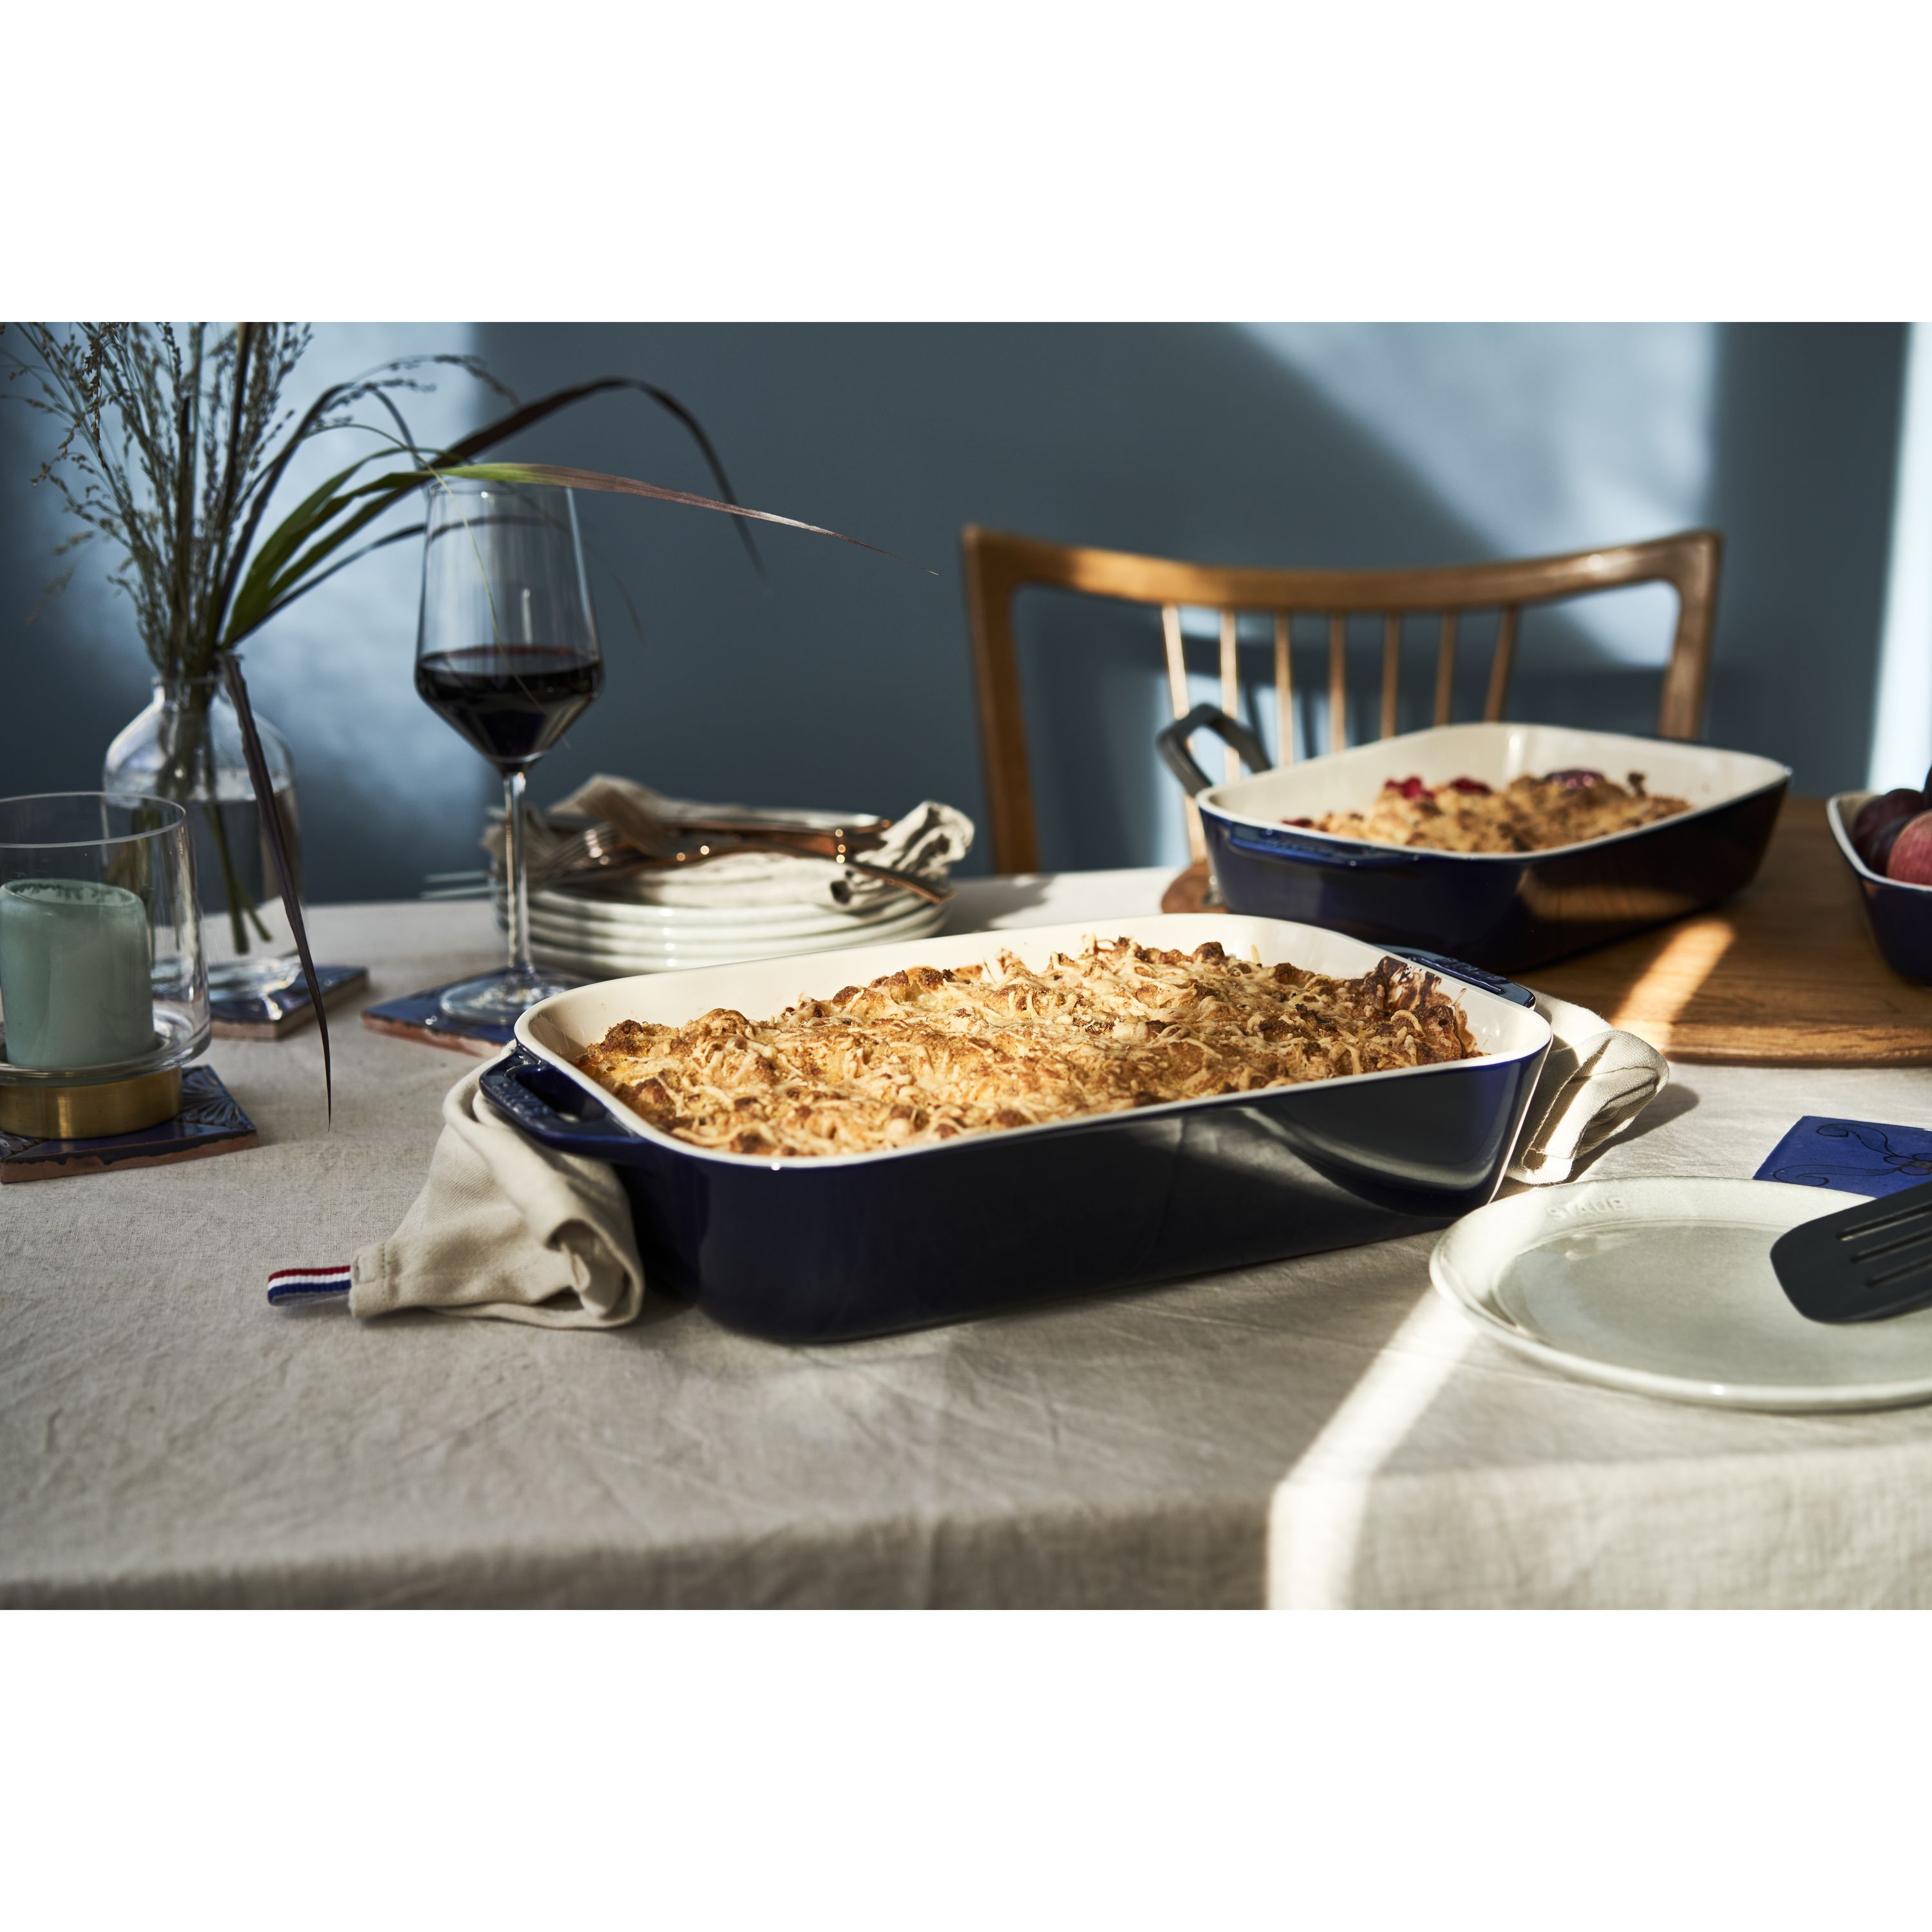 Staub Black Rectangular Baking Dishes, Set of 3 + Reviews